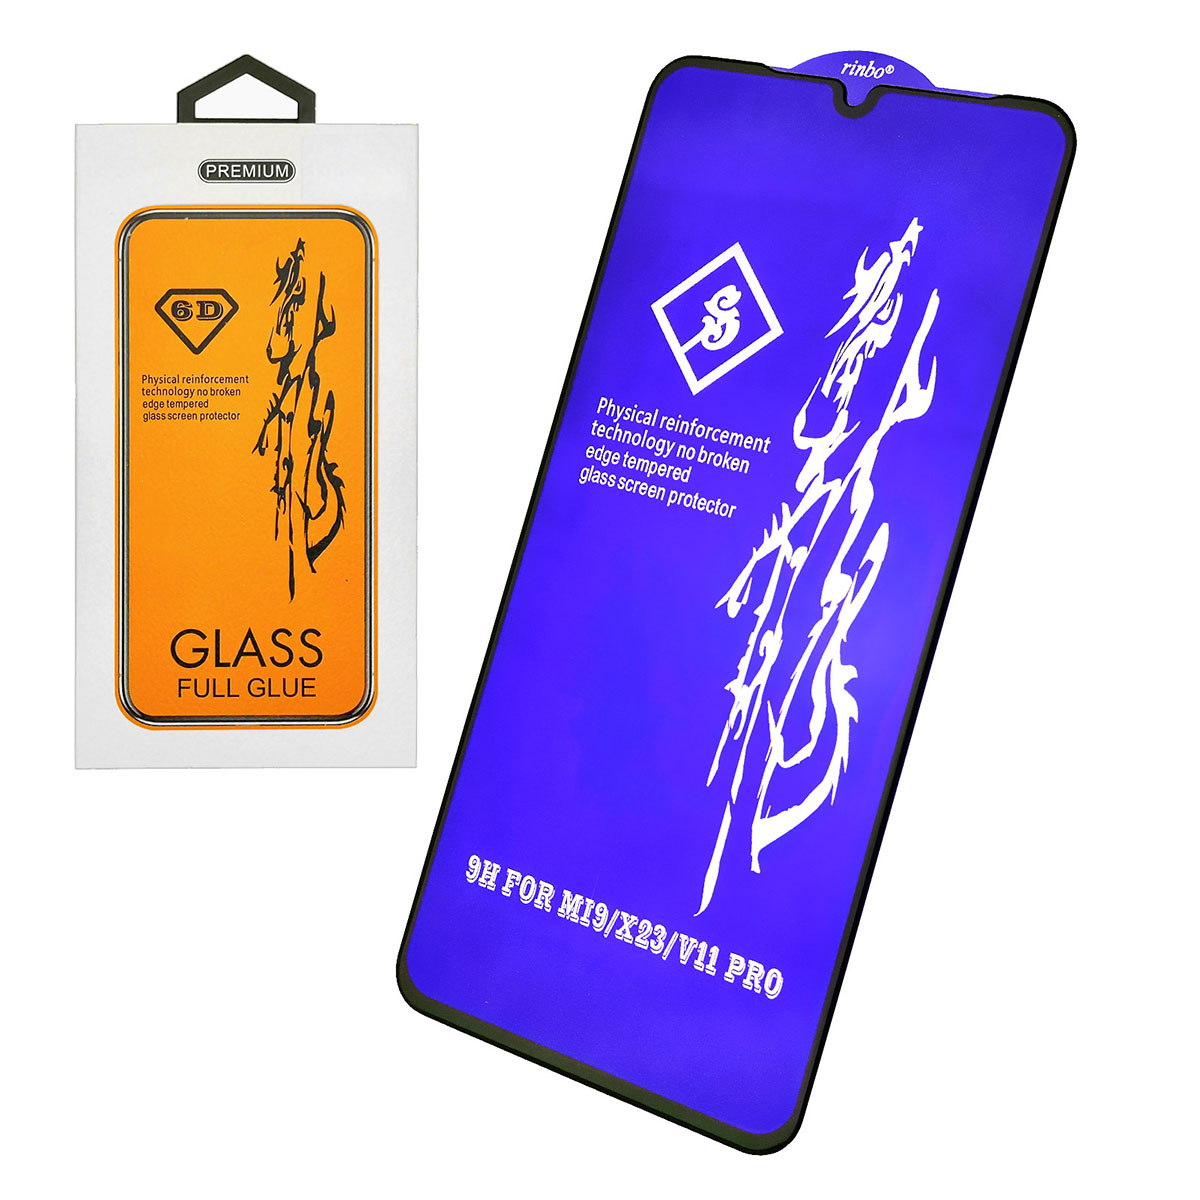 Защитное стекло 6D GLASS FULL GLUE для XIAOMI Mi 9 Pro, цвет канта черный.